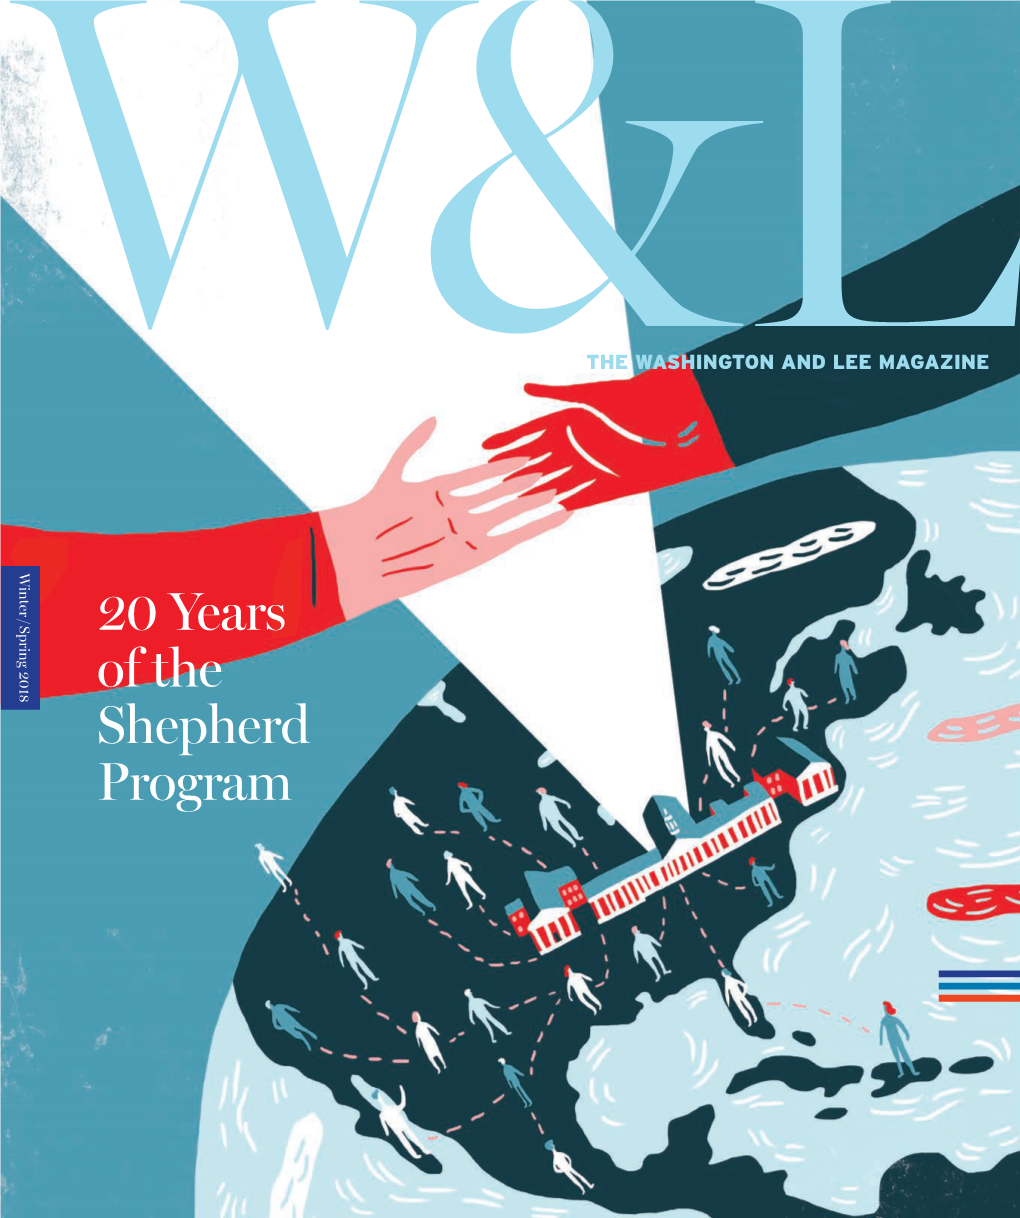 20 Years of the Shepherd Program